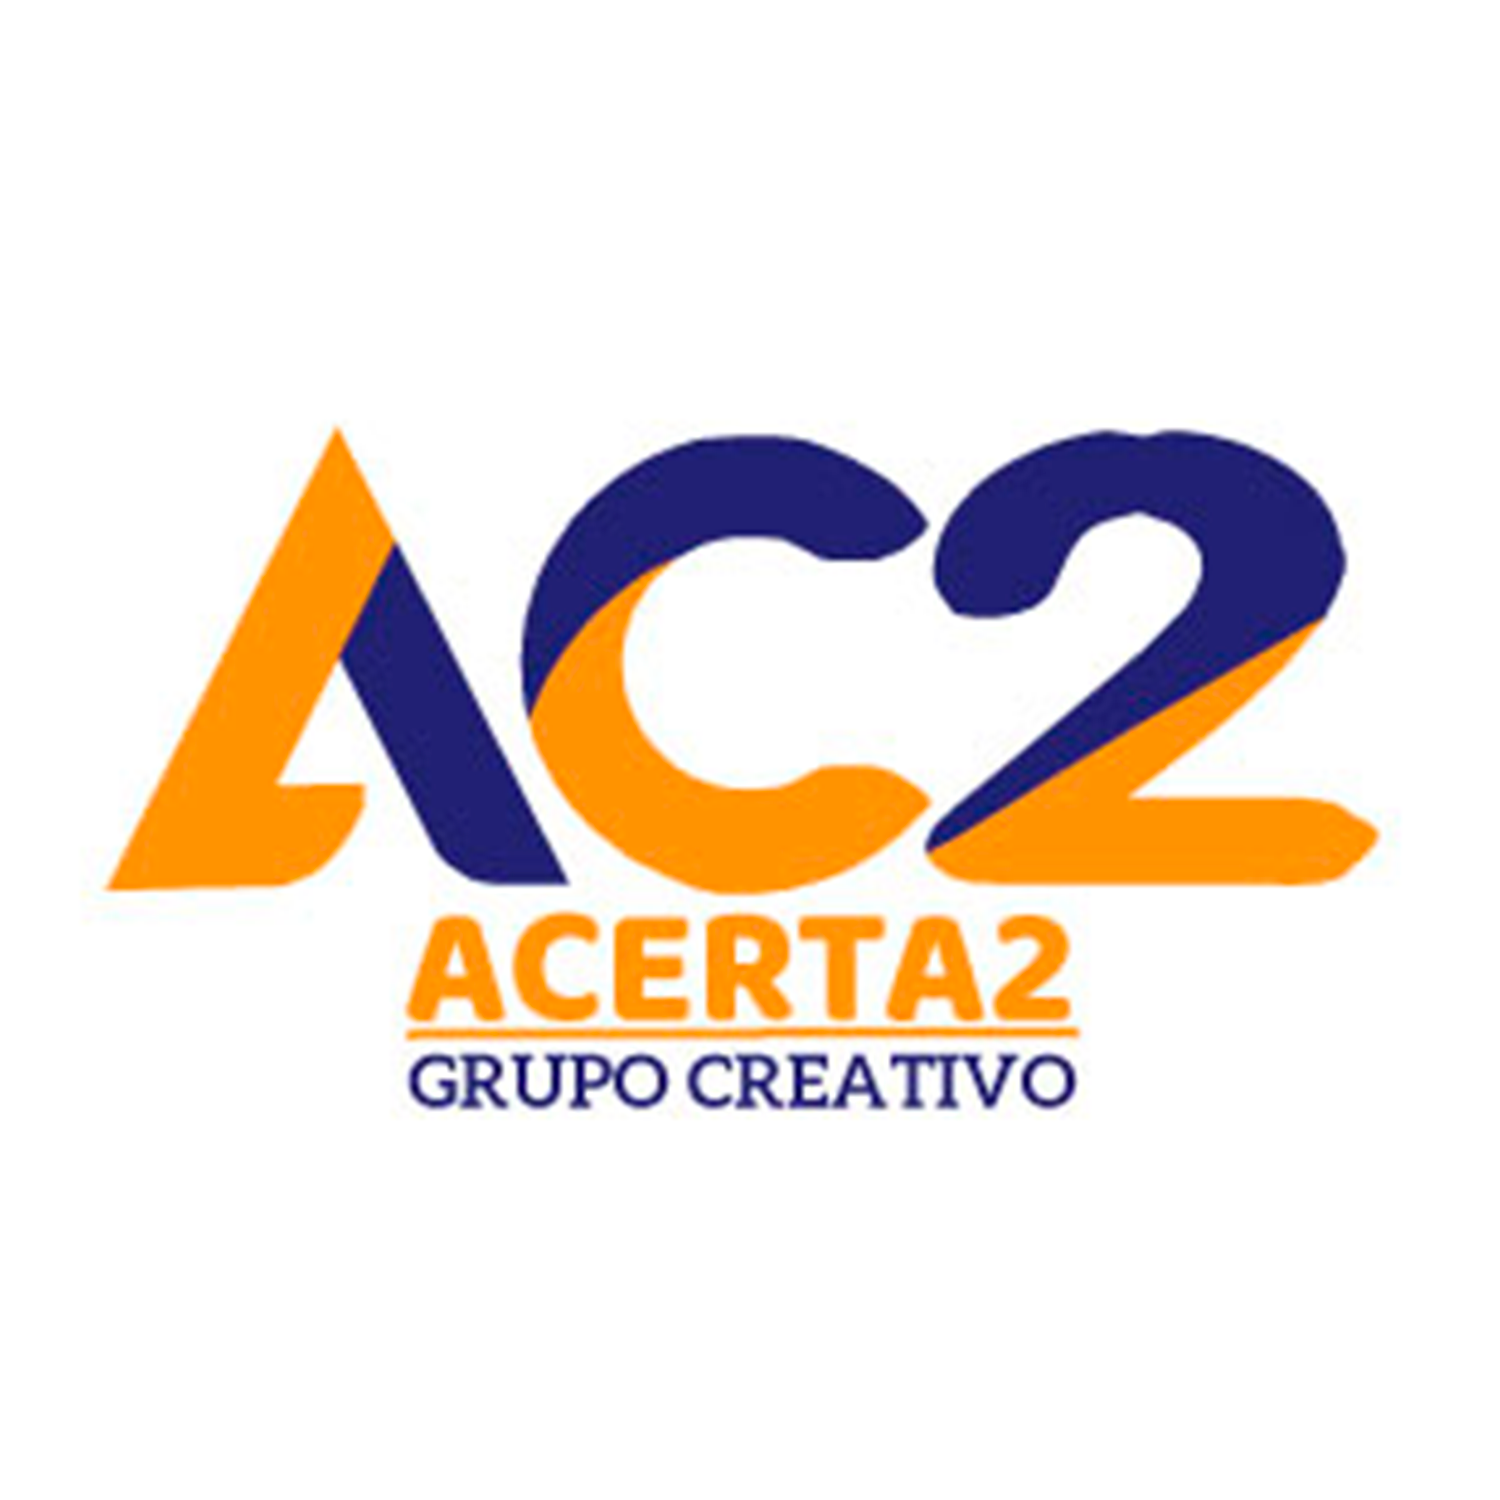 Acerta2 Grupo Creativo